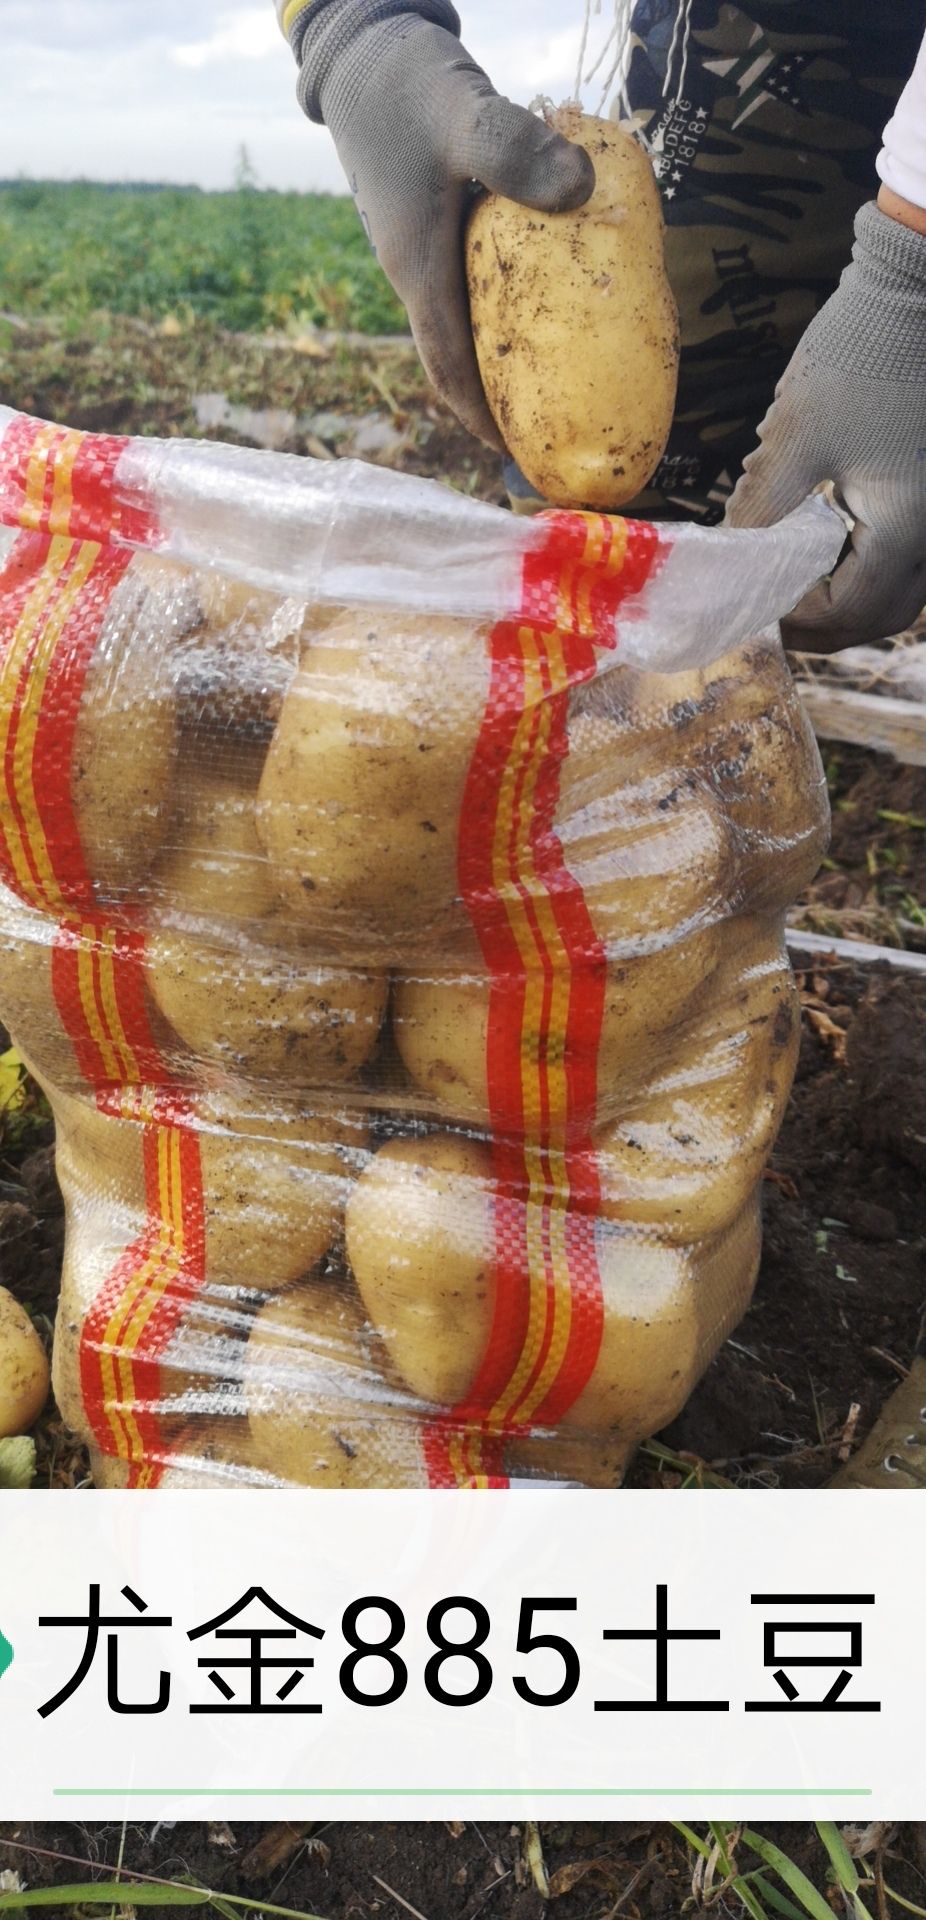 黑龙江牡丹江地区尤金885土豆市场认可的品种欢迎你来